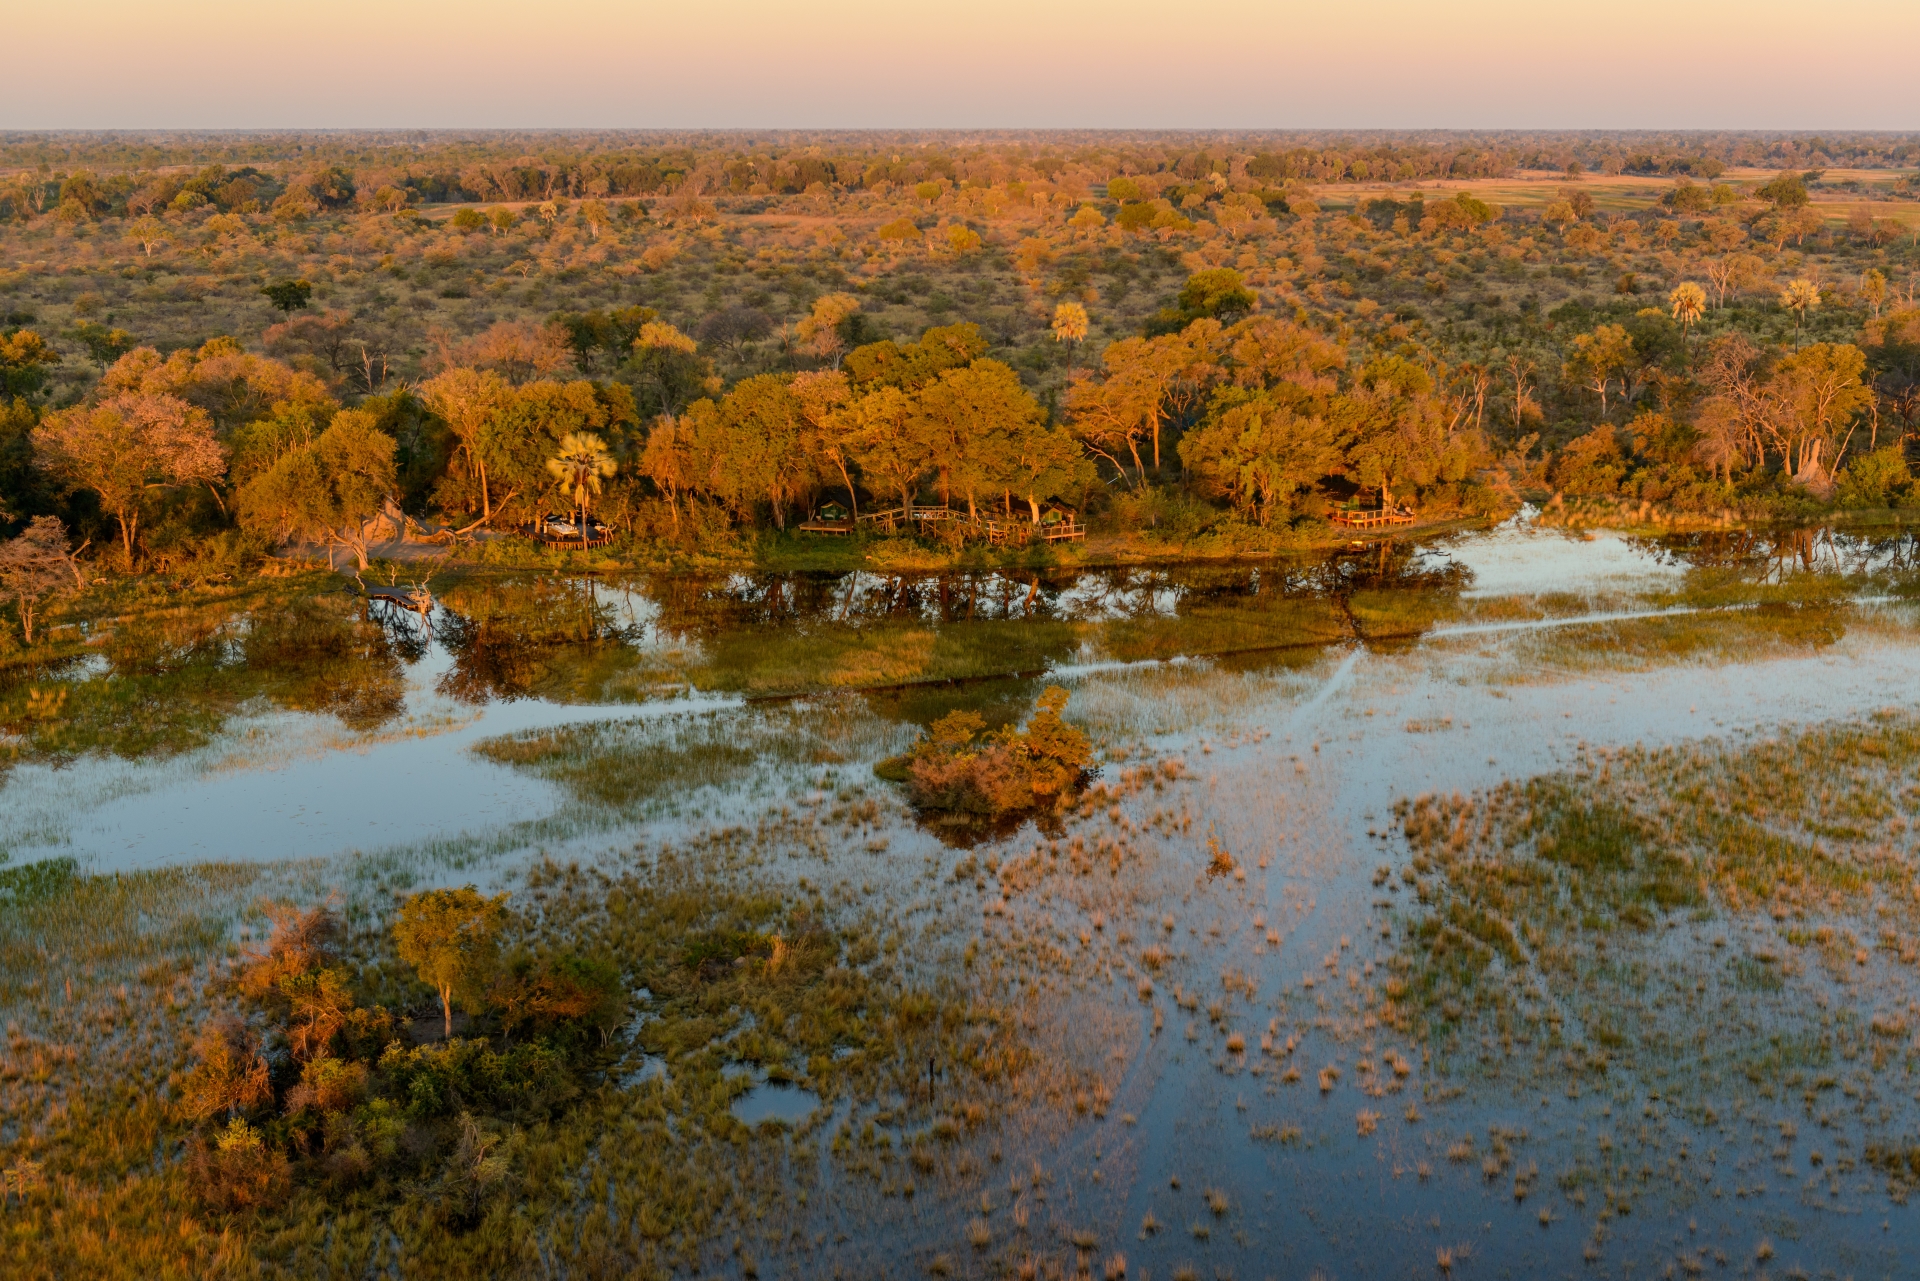 Aerial view of Macatoo - Wild Botswana Riding Safari